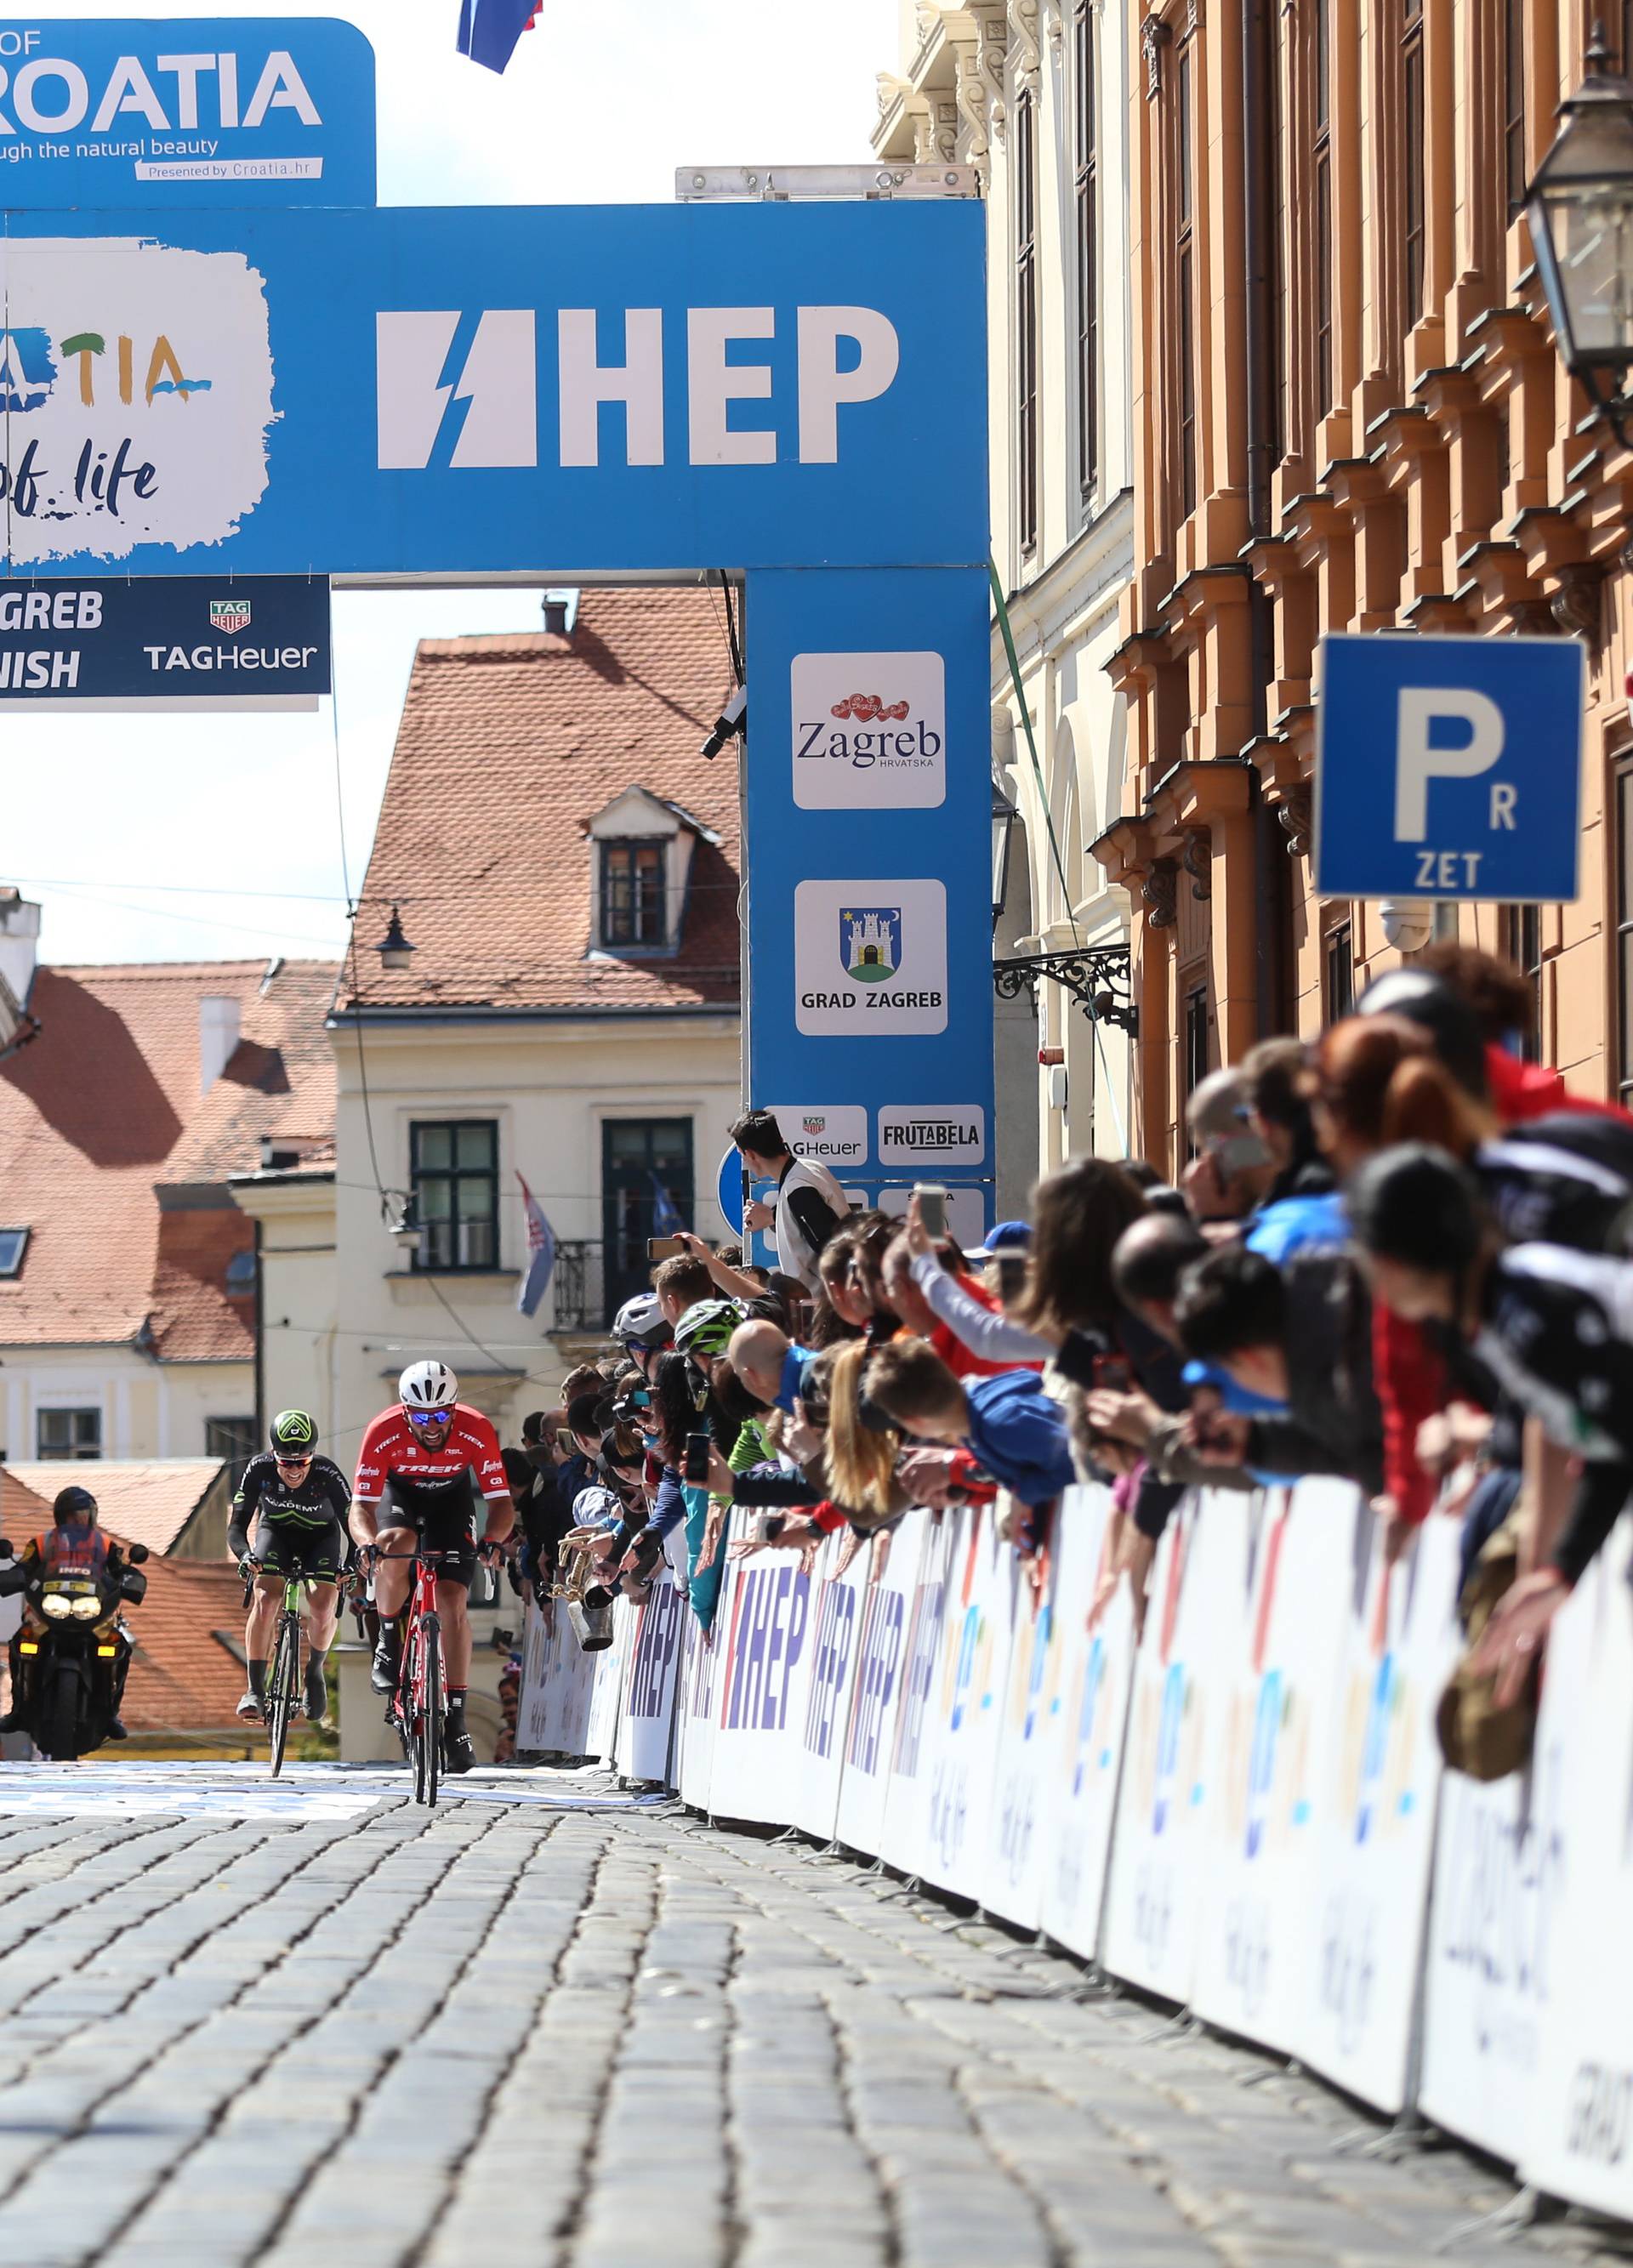 Ludi završetak Tour of Croatia: Modulu etapa, a Nibaliju naslov